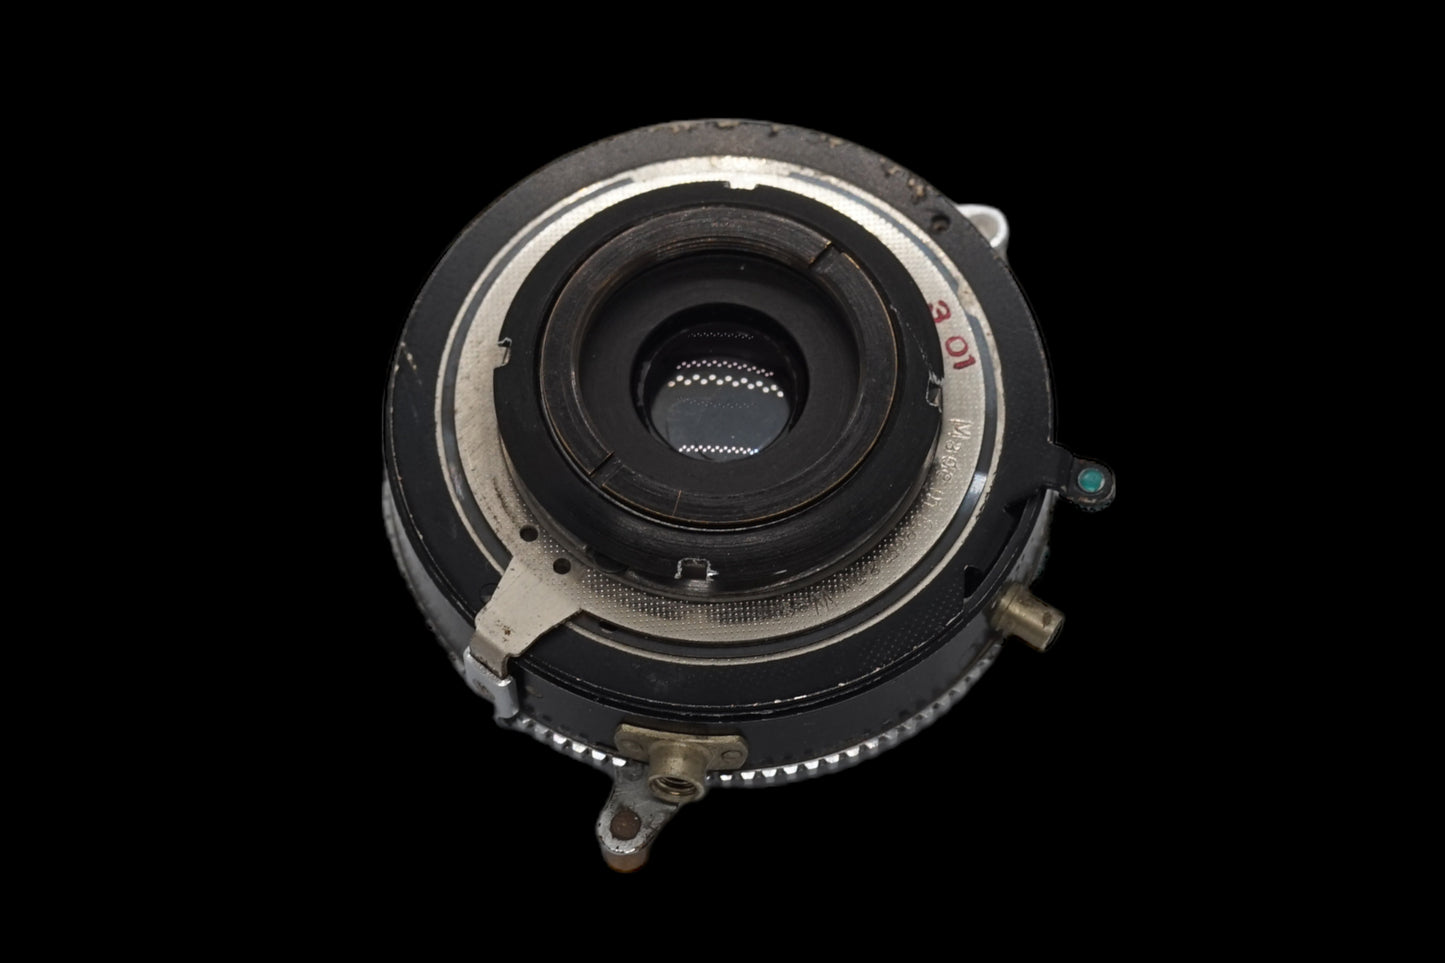 Schneider 65mm F6.8 Lens with Camera Setup